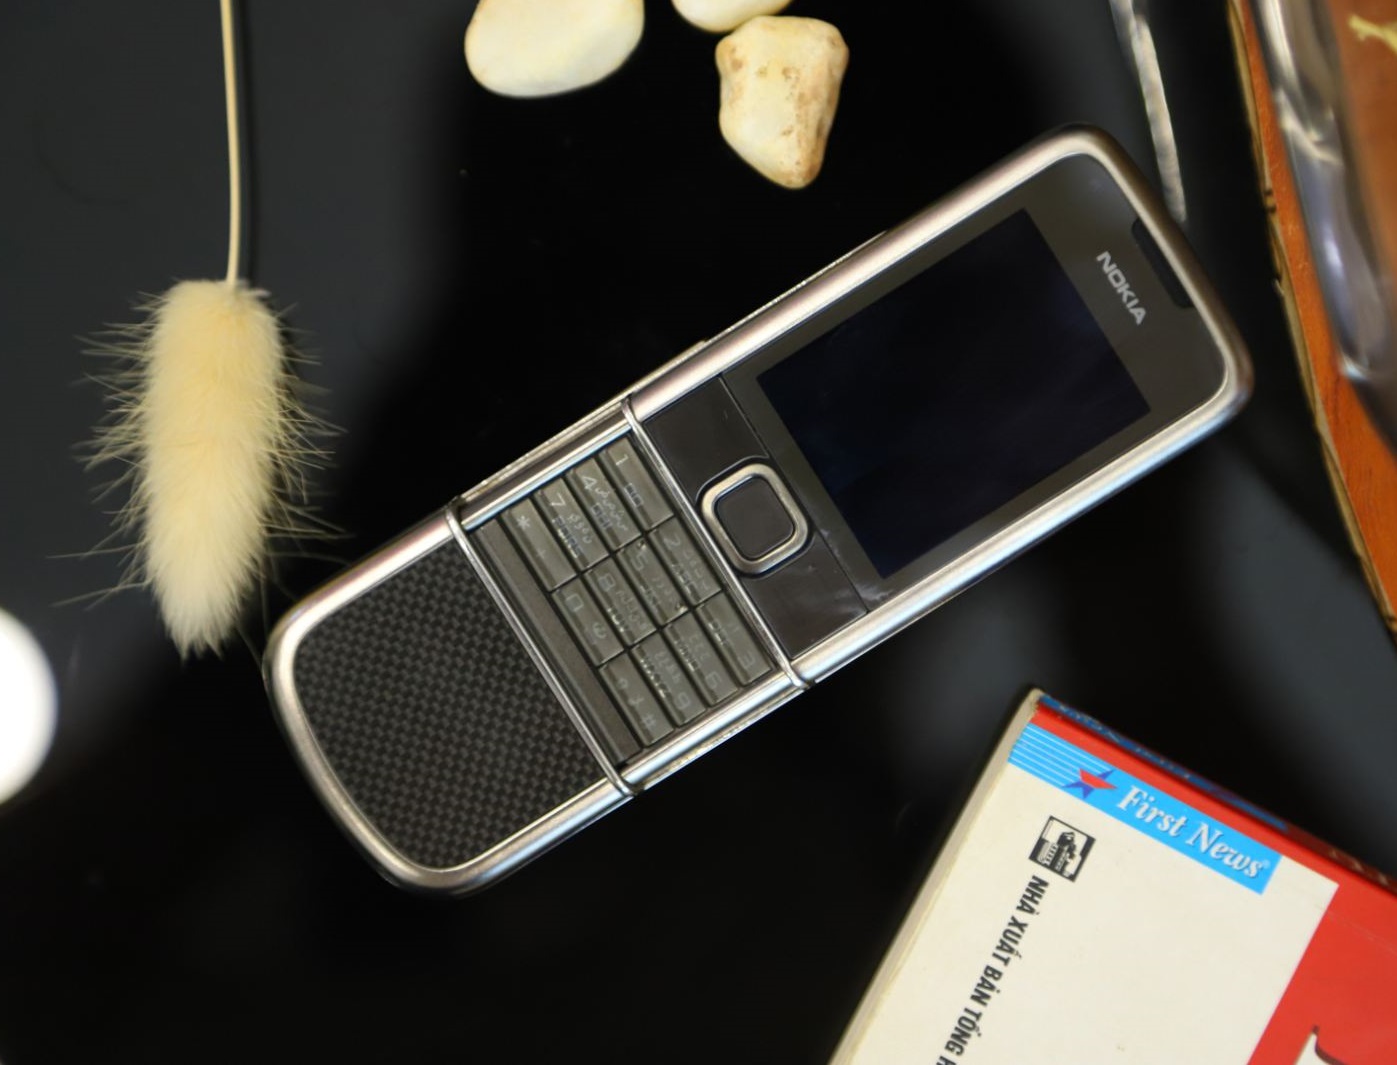 Nokia 8800 Carbon Arte là sự kết hợp tuyệt vời giữa chất liệu titanium và gốm. Thiết kế này tạo ra một chiếc điện thoại mạnh mẽ, nhẹ nhàng và đầy phong cách. Xem hình ảnh để cảm nhận được vẻ đẹp của Nokia 8800 Carbon Arte.